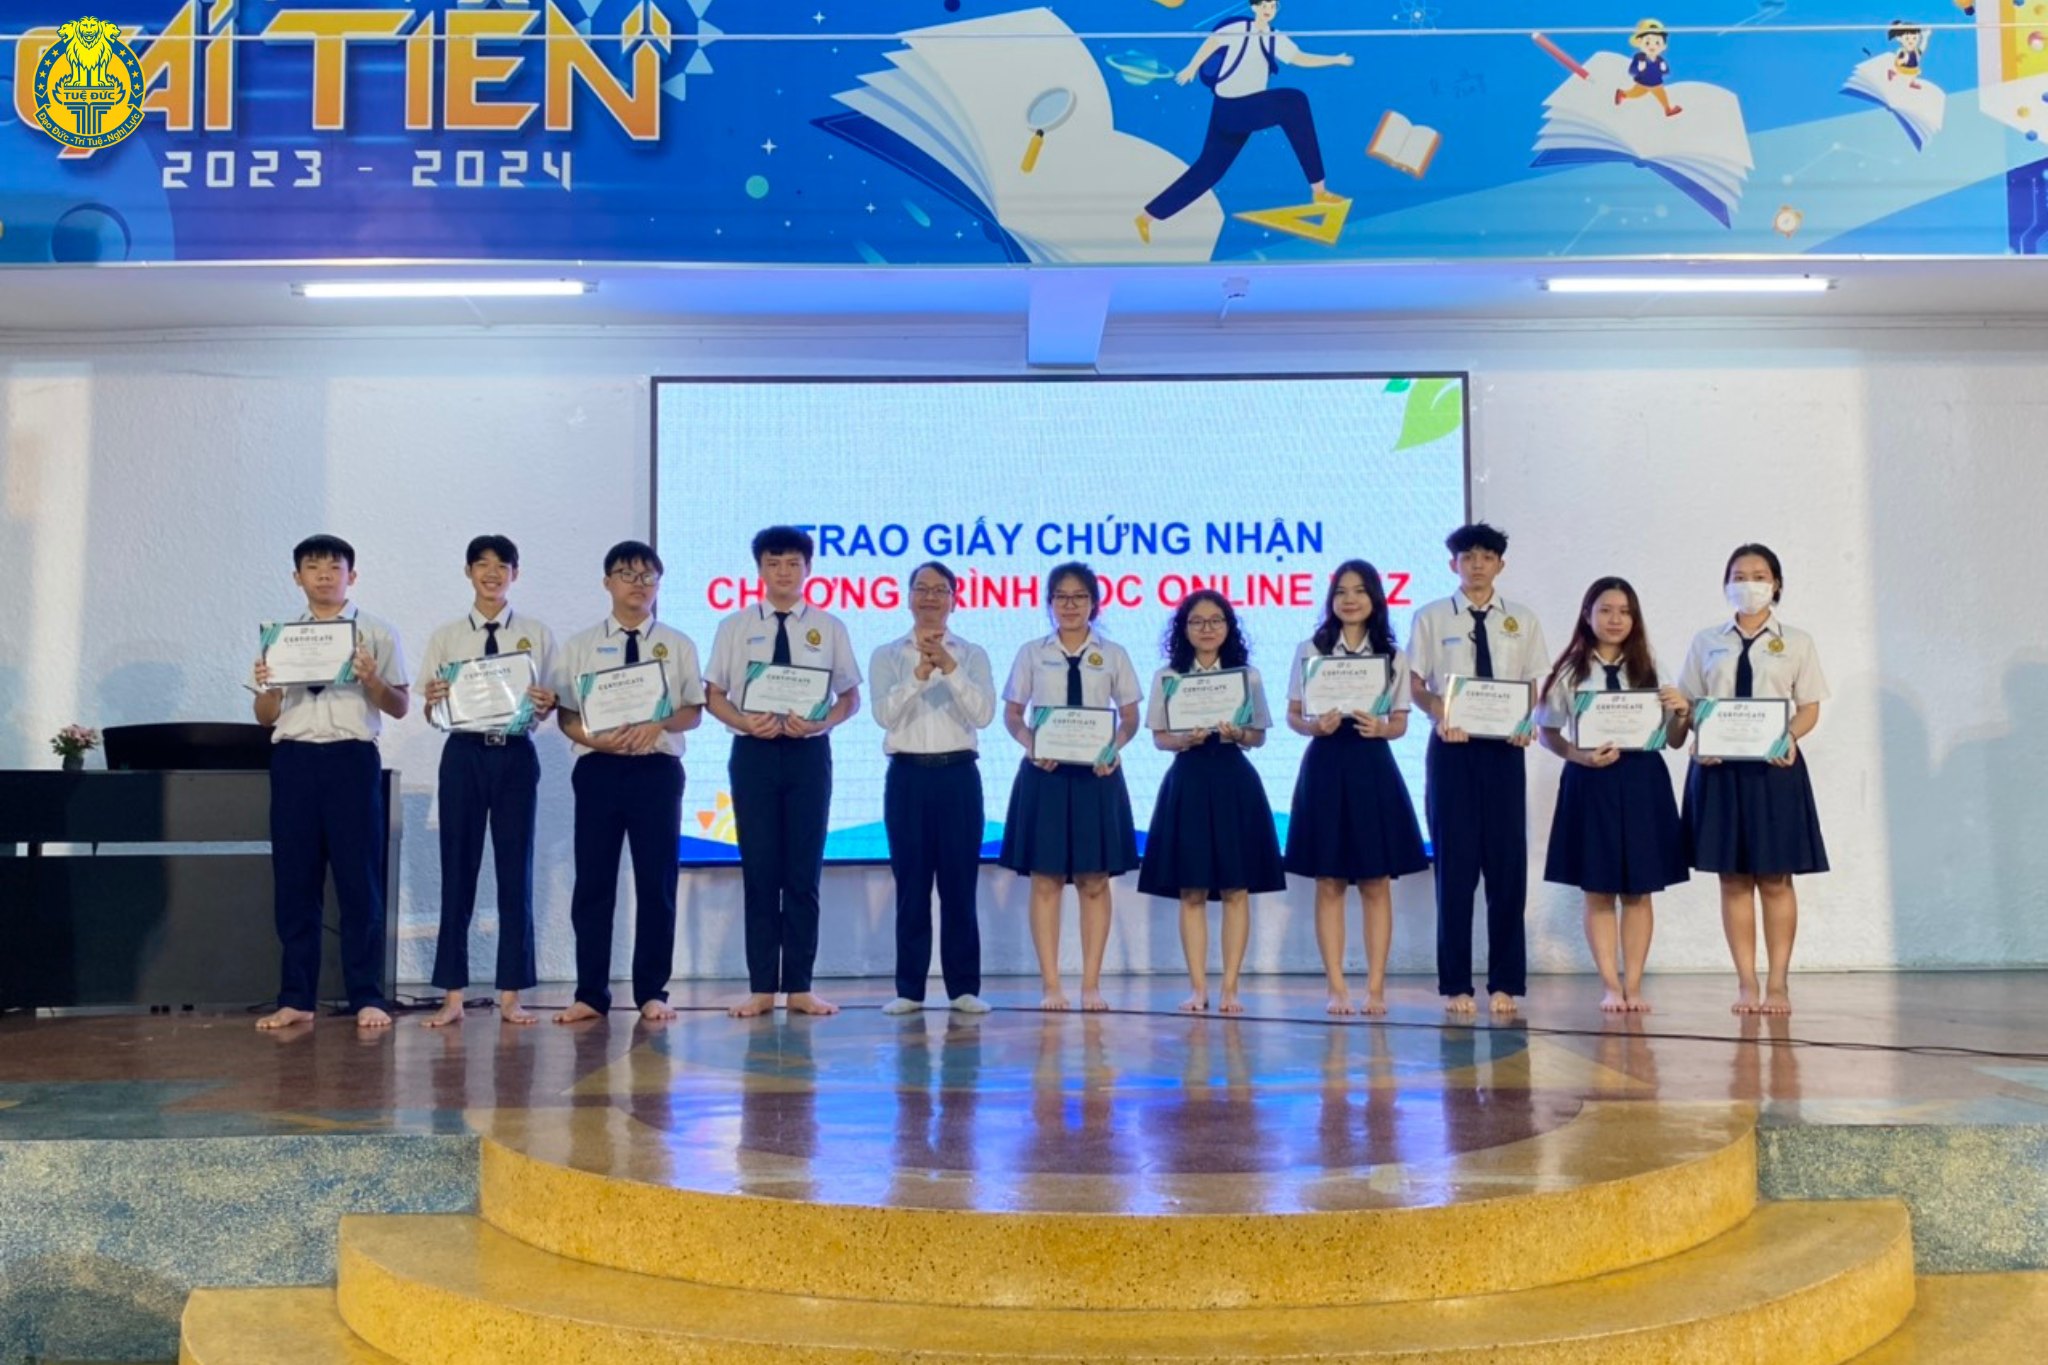 Chúc mừng các em Học sinh Trung học Pathway Tuệ Đức đã hoàn thành Masterclass và nhận được Giấy chứng nhận.